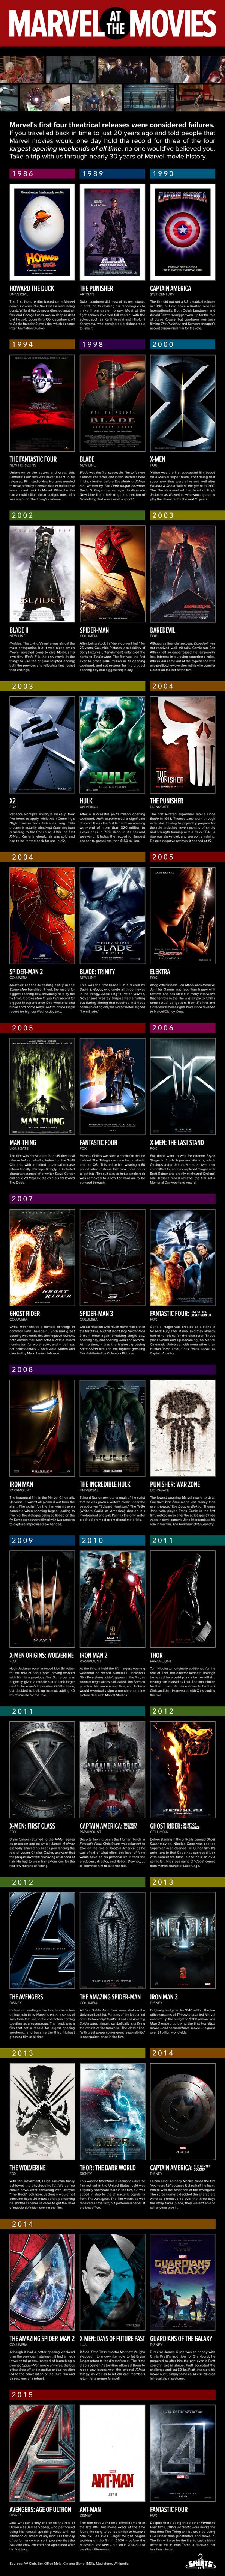 Marvel Movie Infographic